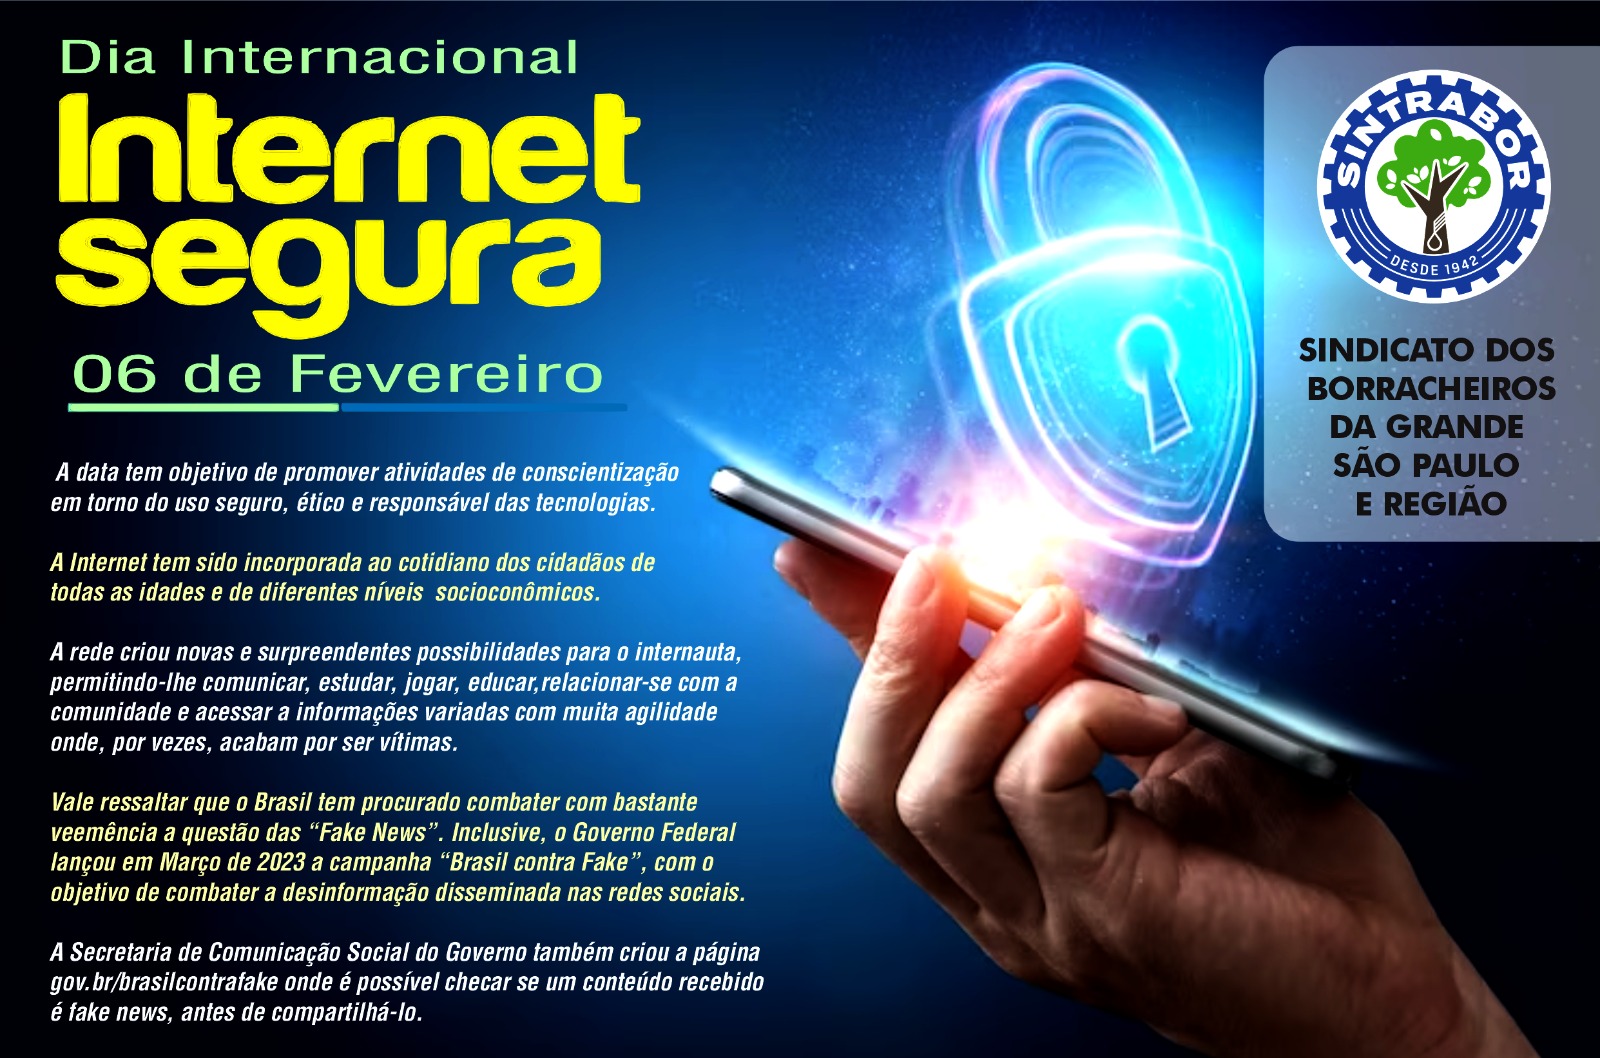 O Dia Internacional da Internet Segura tem como objetivo promover o uso seguro e responsável da internet.